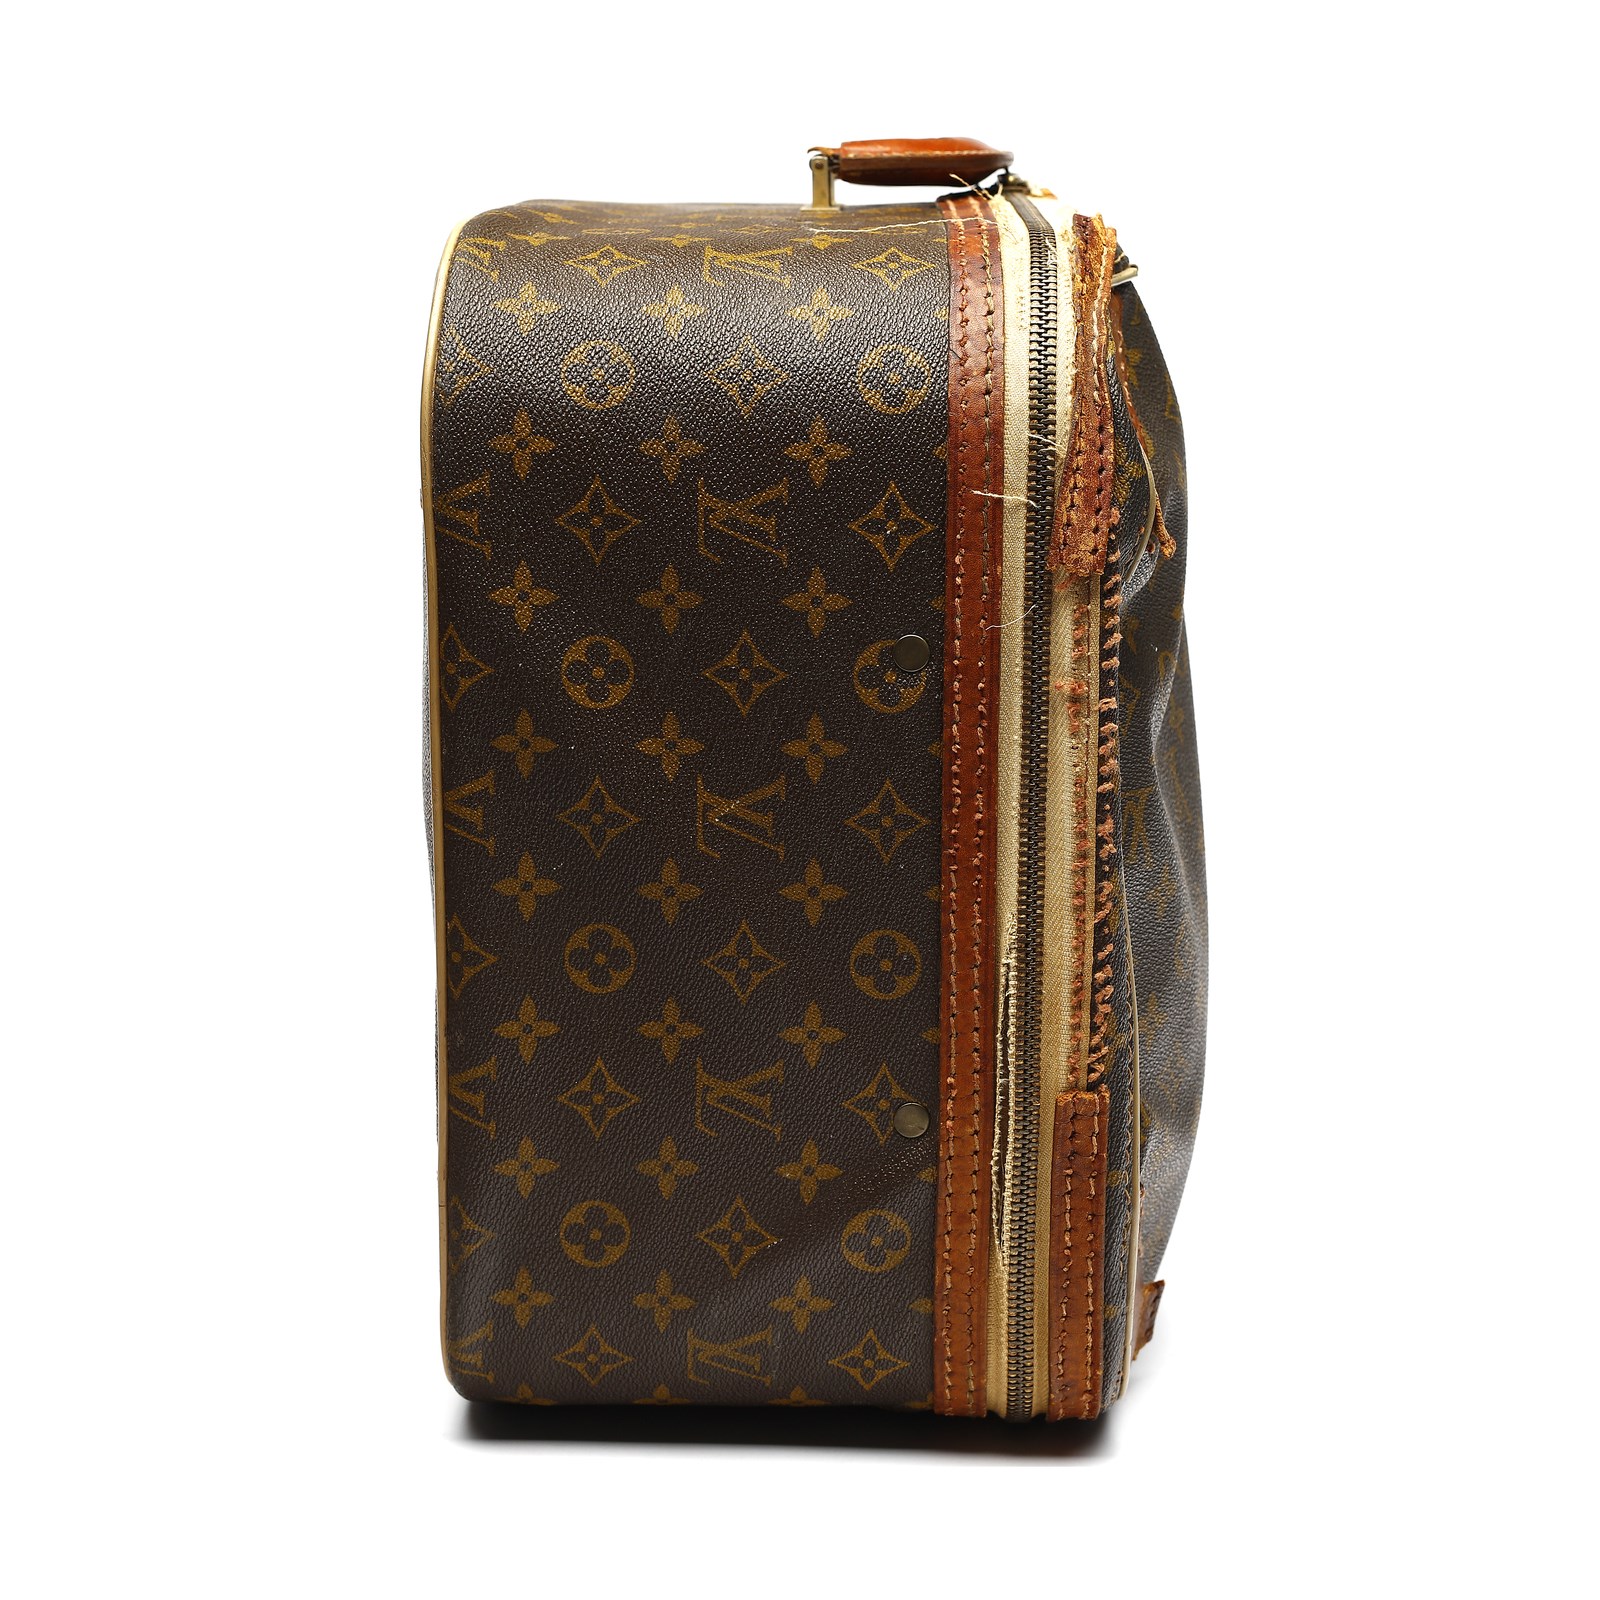 Sold at Auction: Louis Vuitton, Louis Vuitton Louis Vuitton rigid suitcase